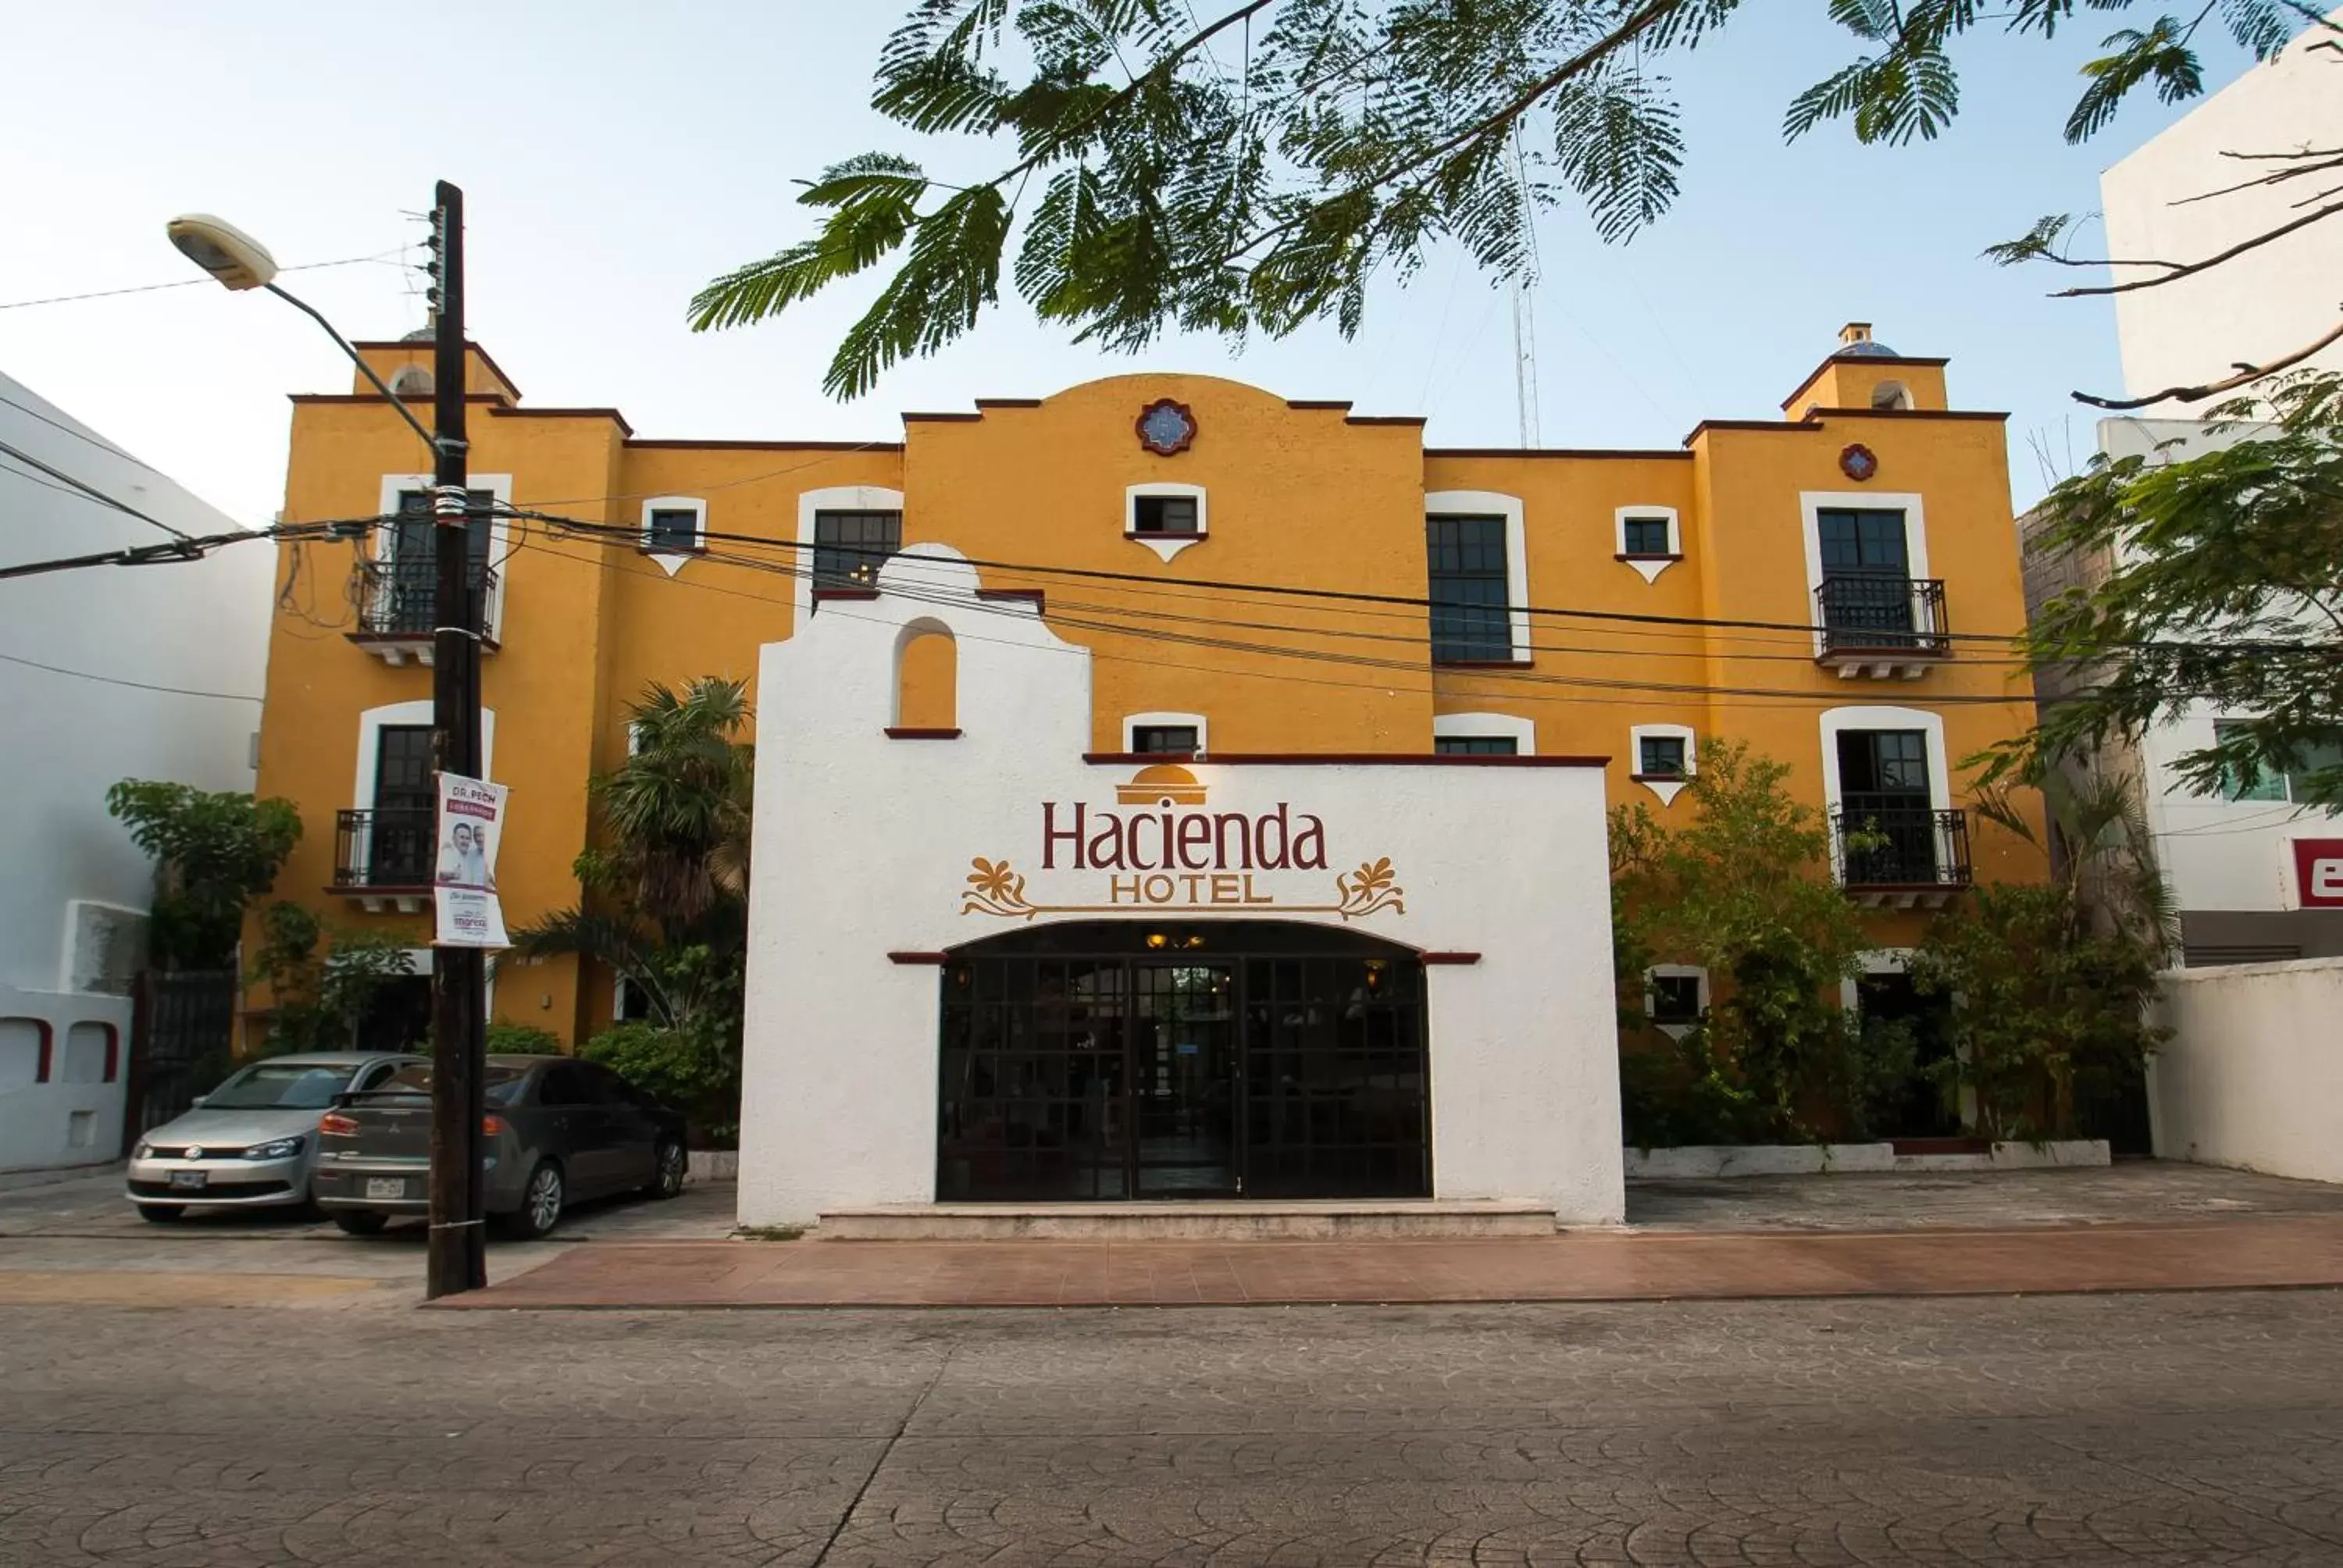 Property building, Facade/Entrance in Hotel Hacienda Cancun